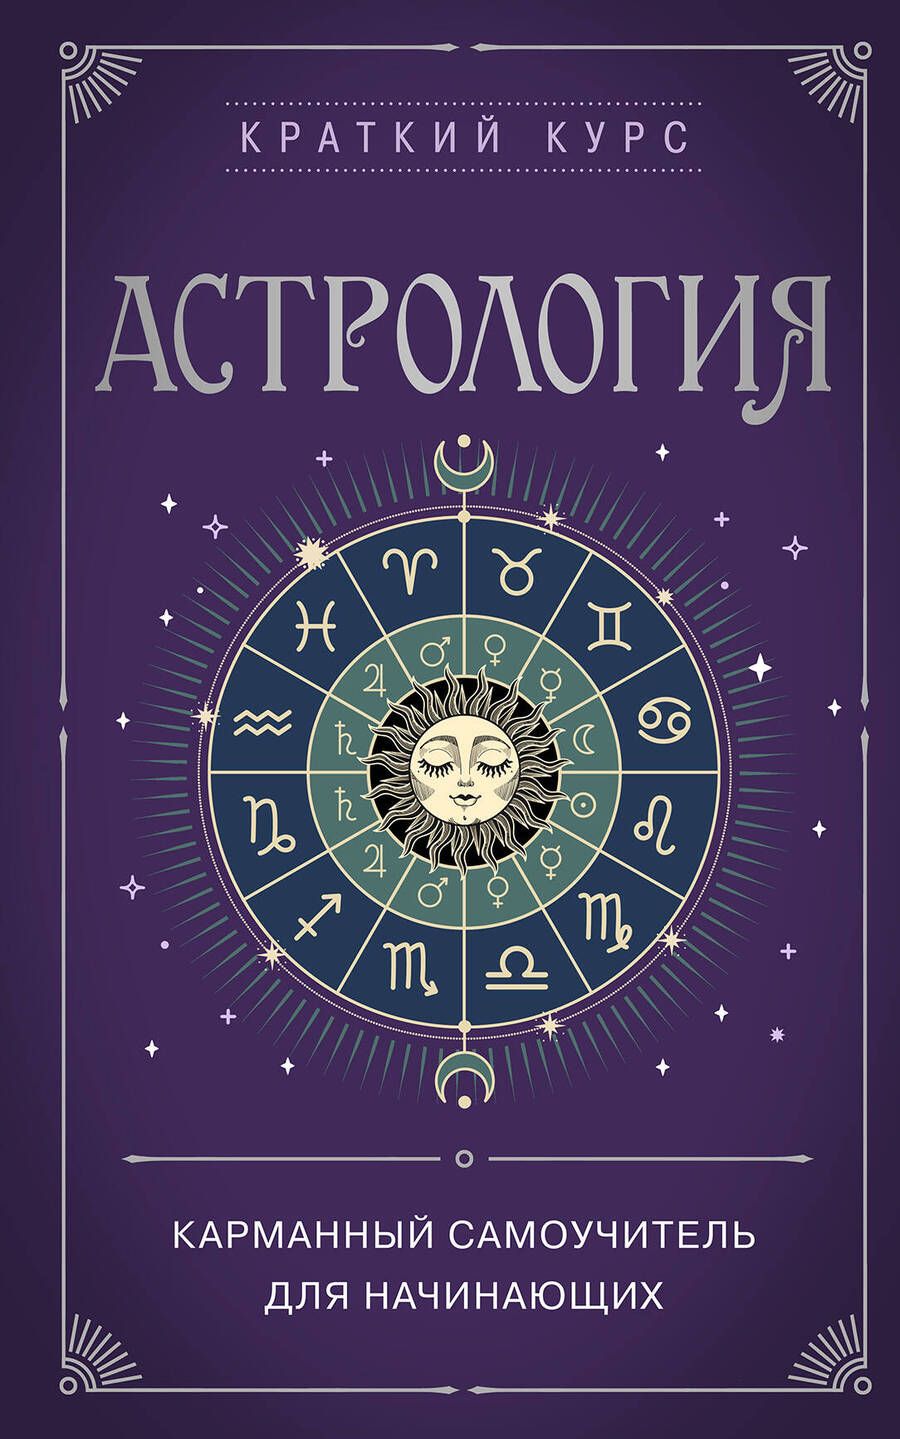 Обложка книги "Бондаренко: Астрология. Карманный самоучитель для начинающих"